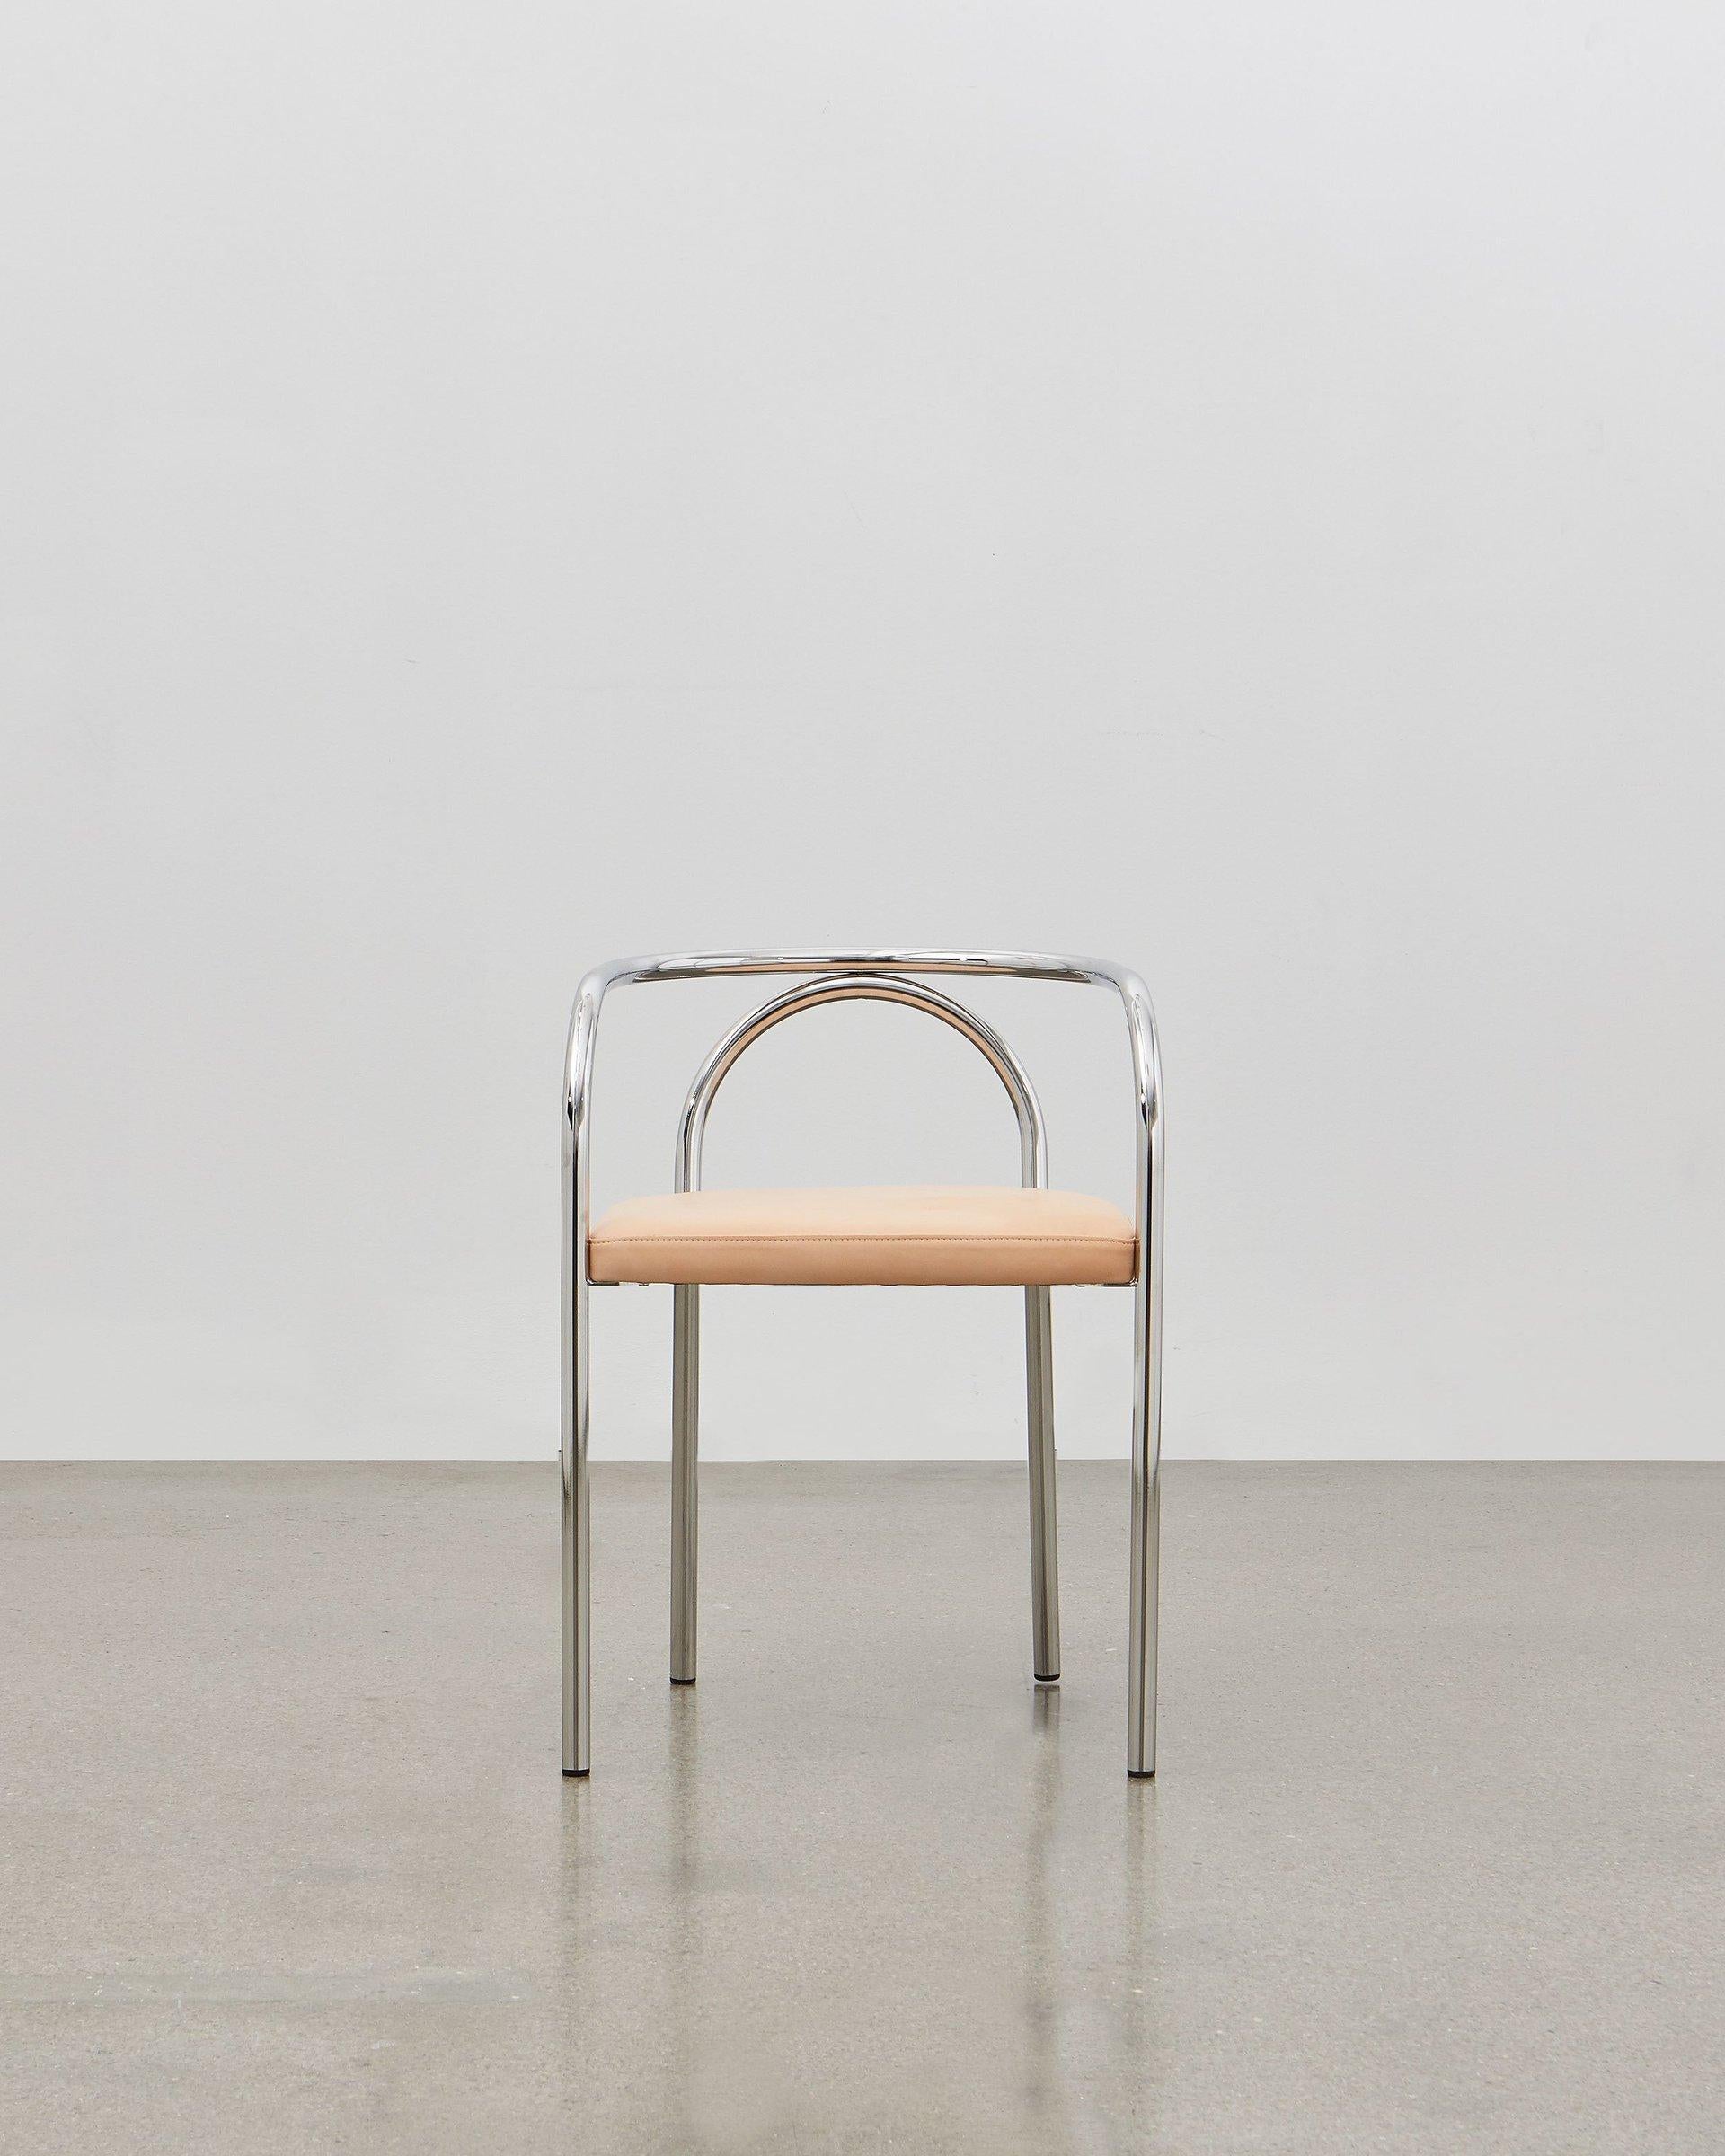 En créant la chaise PH, Poul Henningsen a cherché à réinventer un certain nombre de modèles de meubles classiques qui étaient traditionnellement construits en bois, comme la chaise 